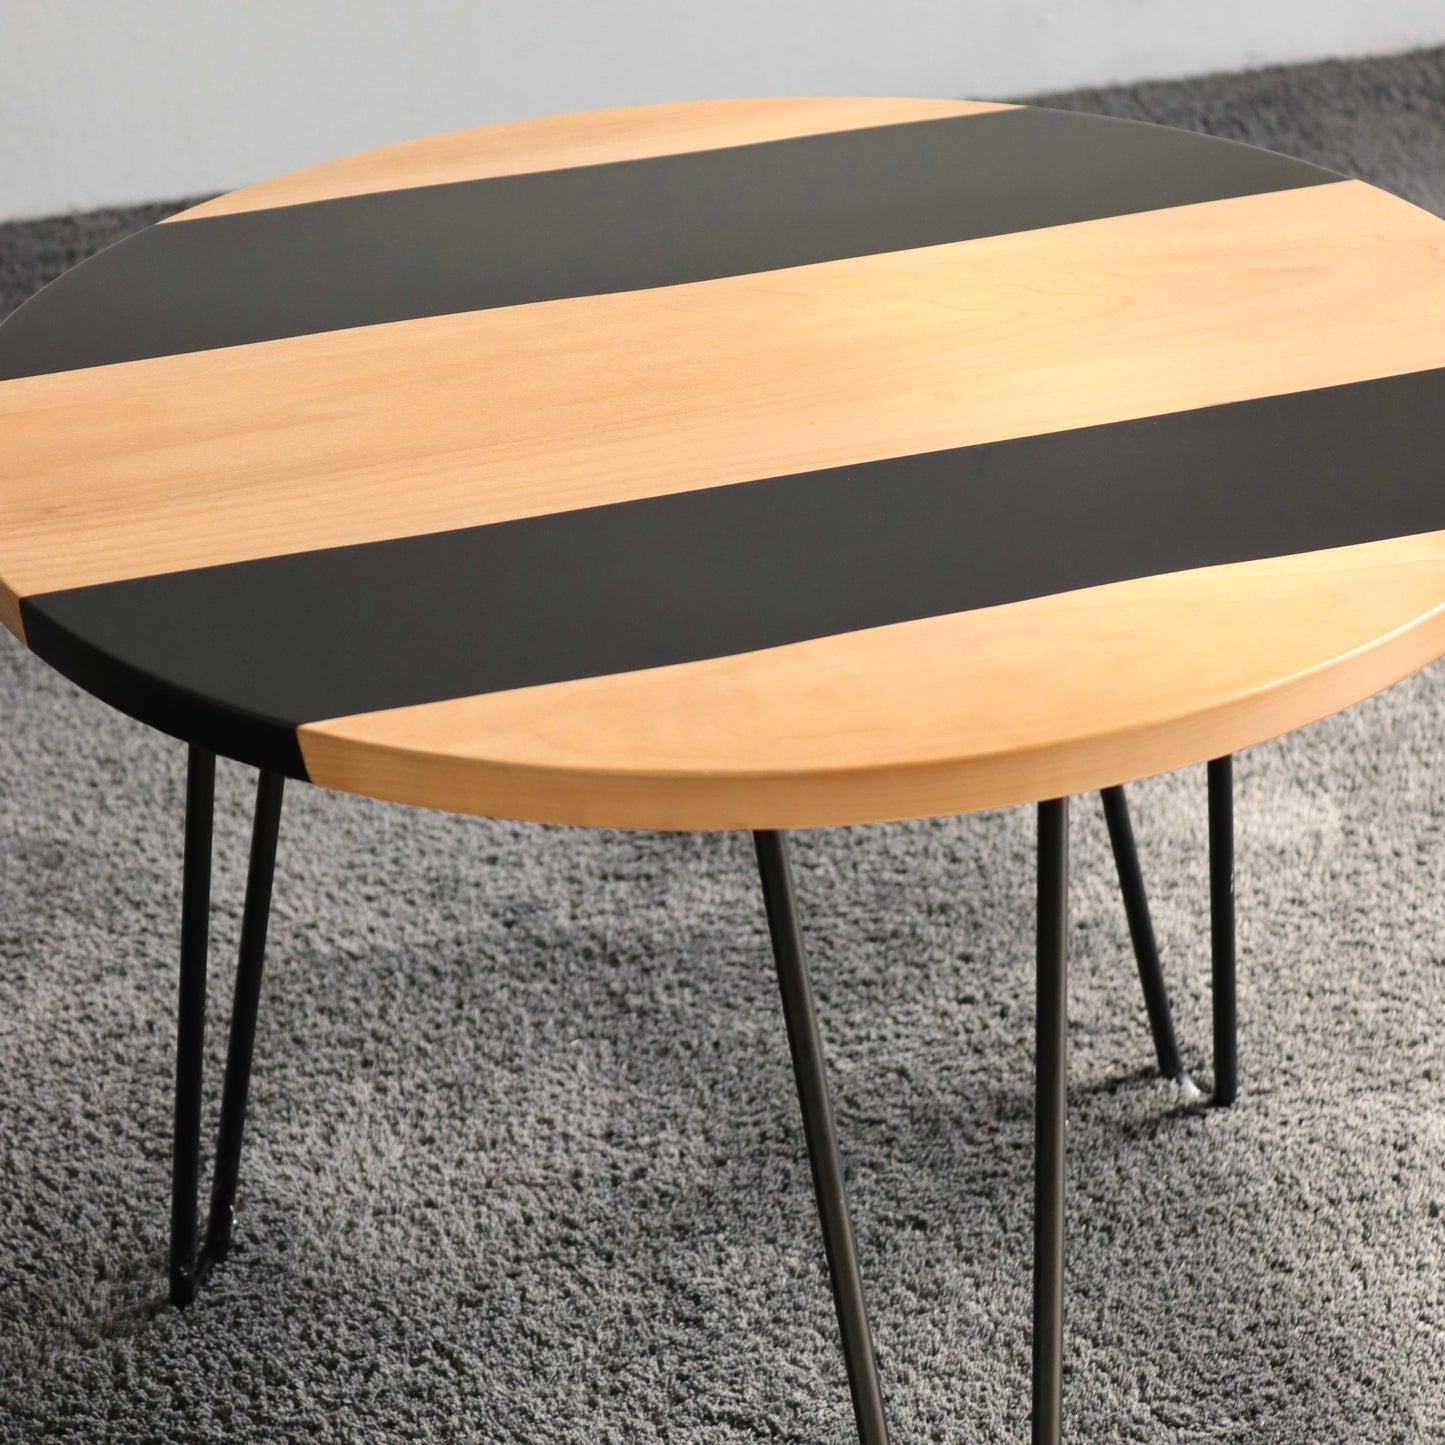 Tavolino in legno e resina nera